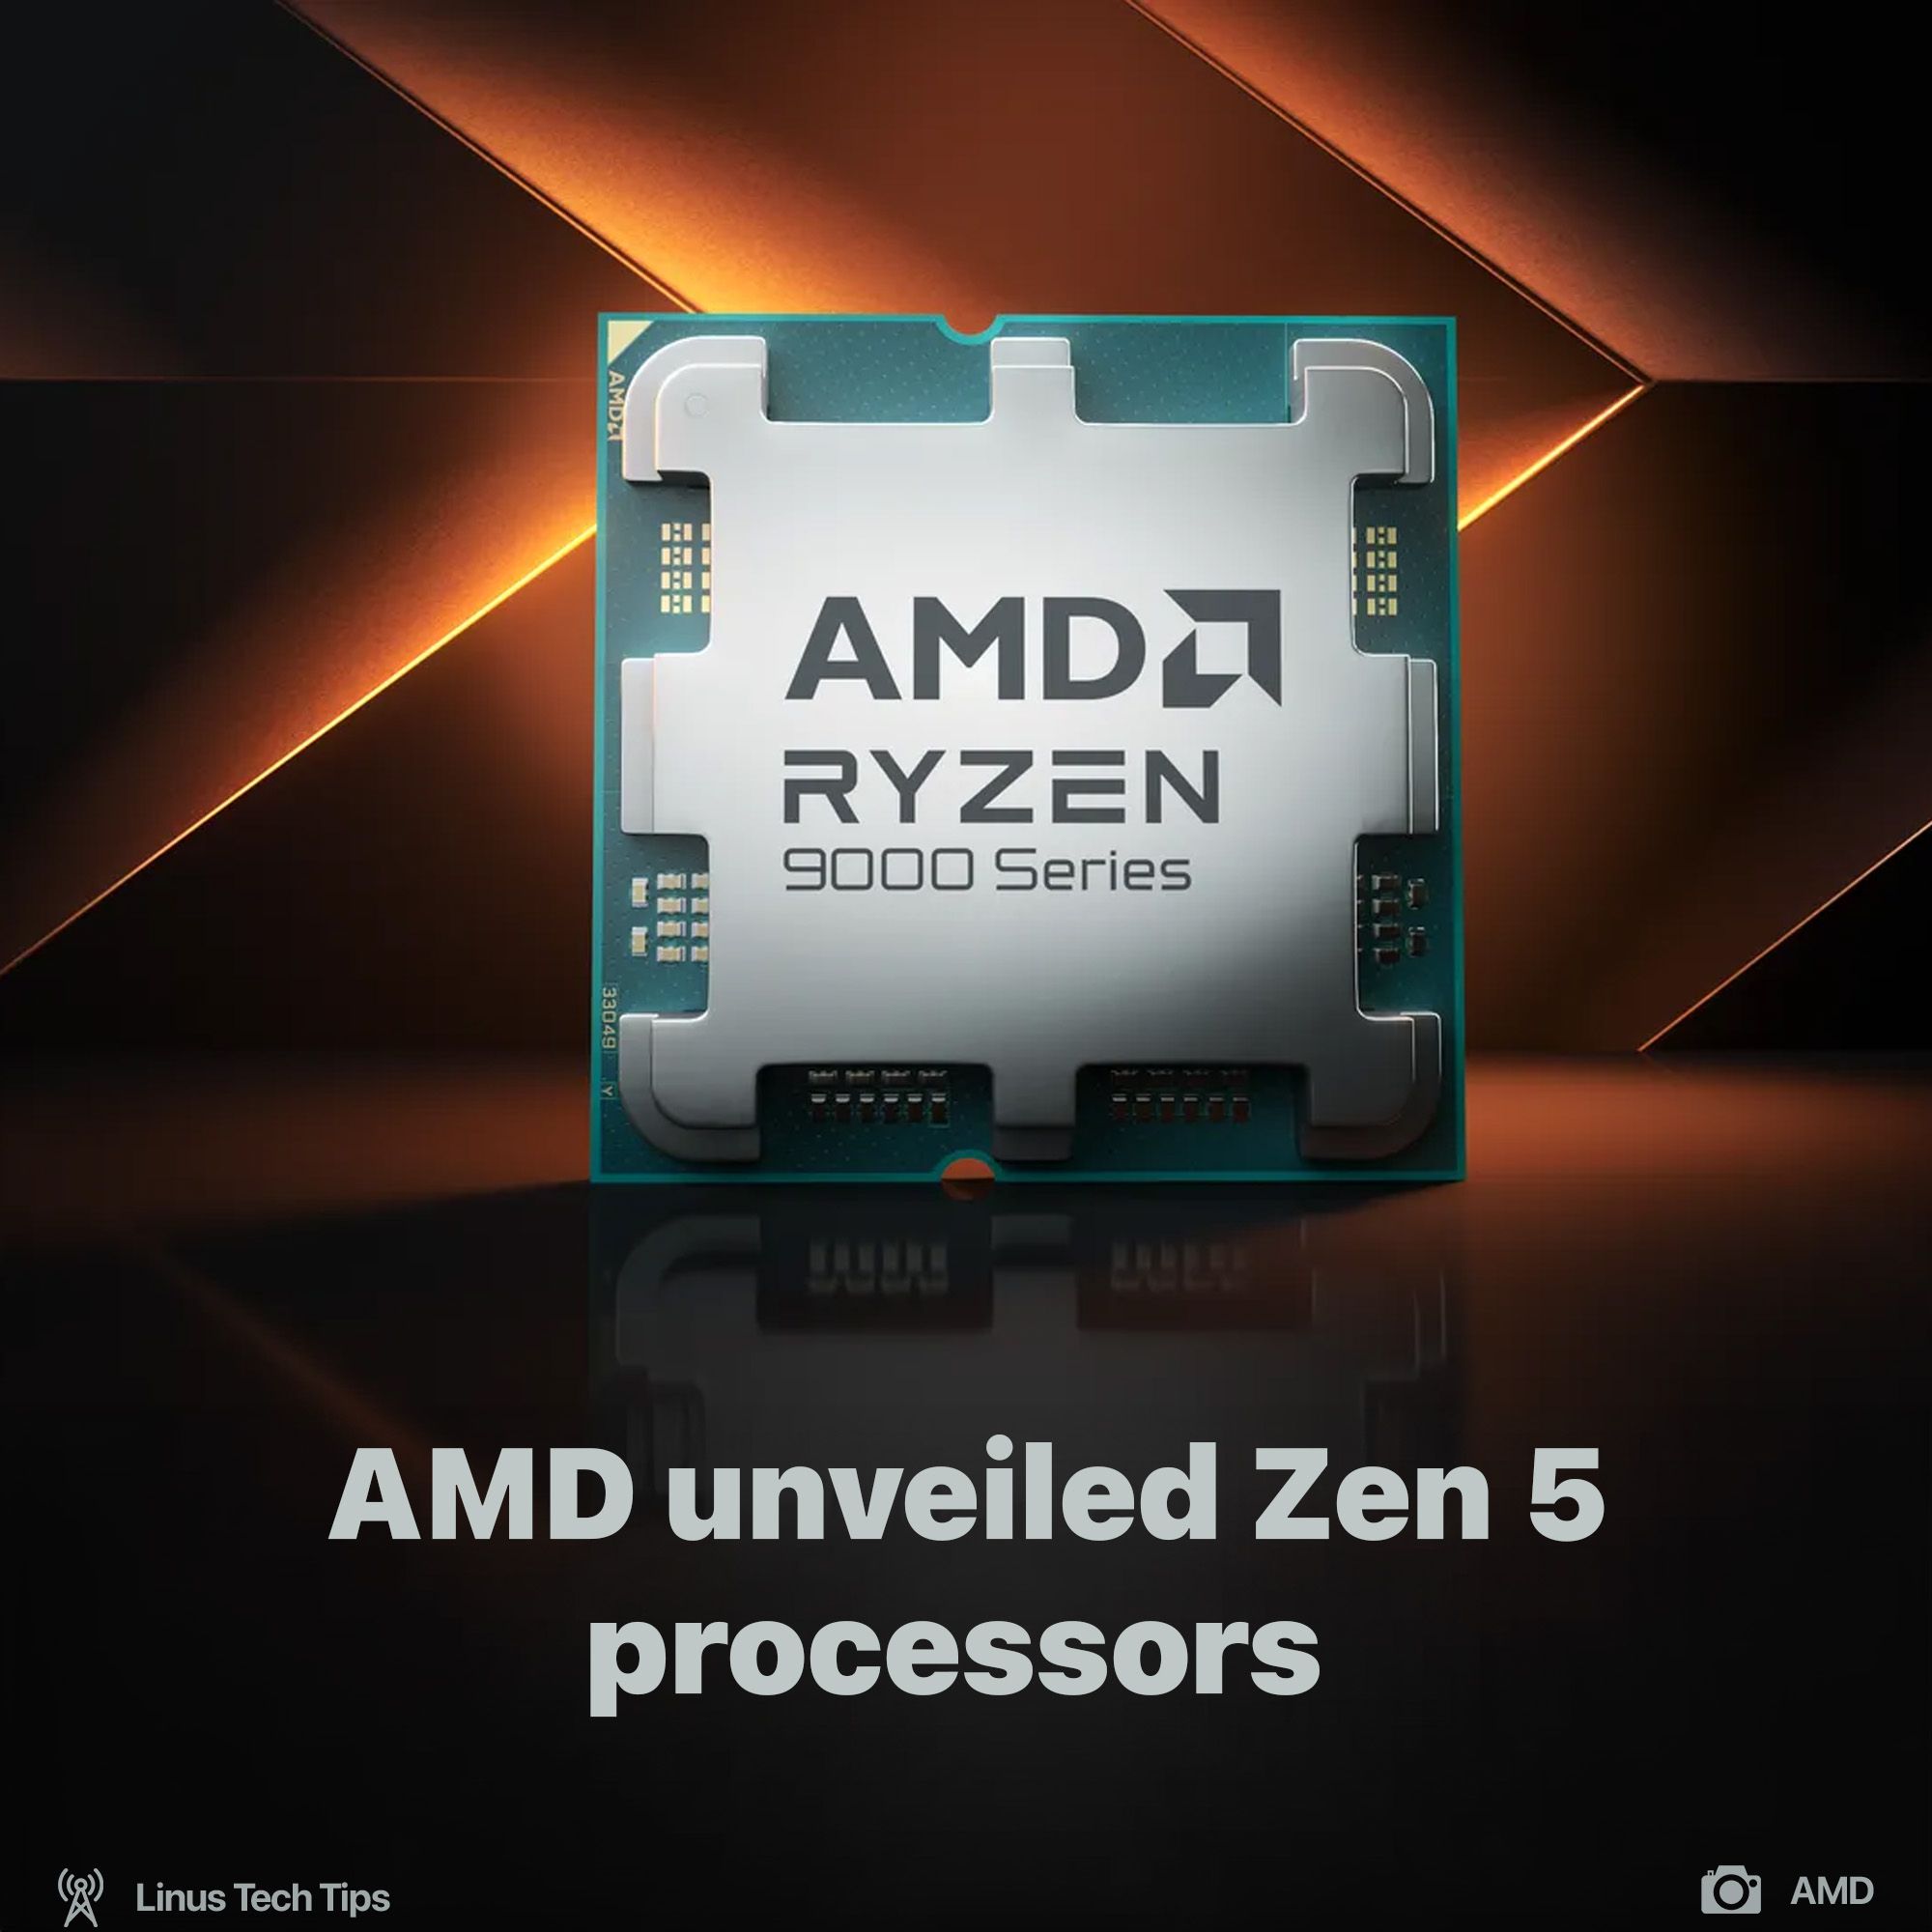 AMD unveiled Zen 5 processors